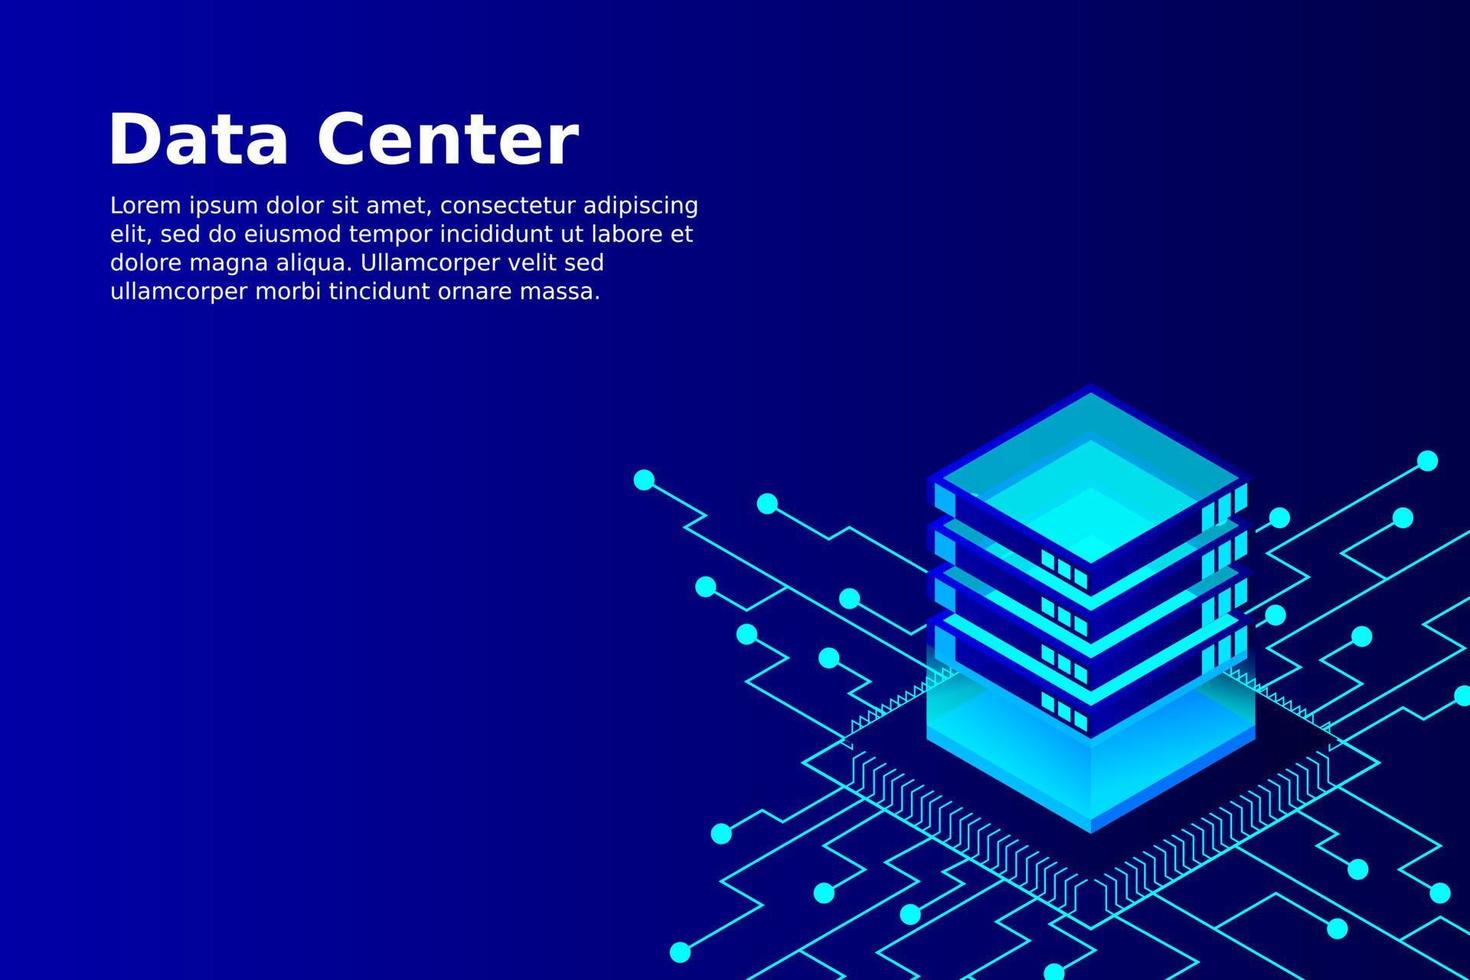 Konzept der Big-Data-Verarbeitungsenergiestation des zukünftigen Serverraum-Rack-Rechenzentrums vektor